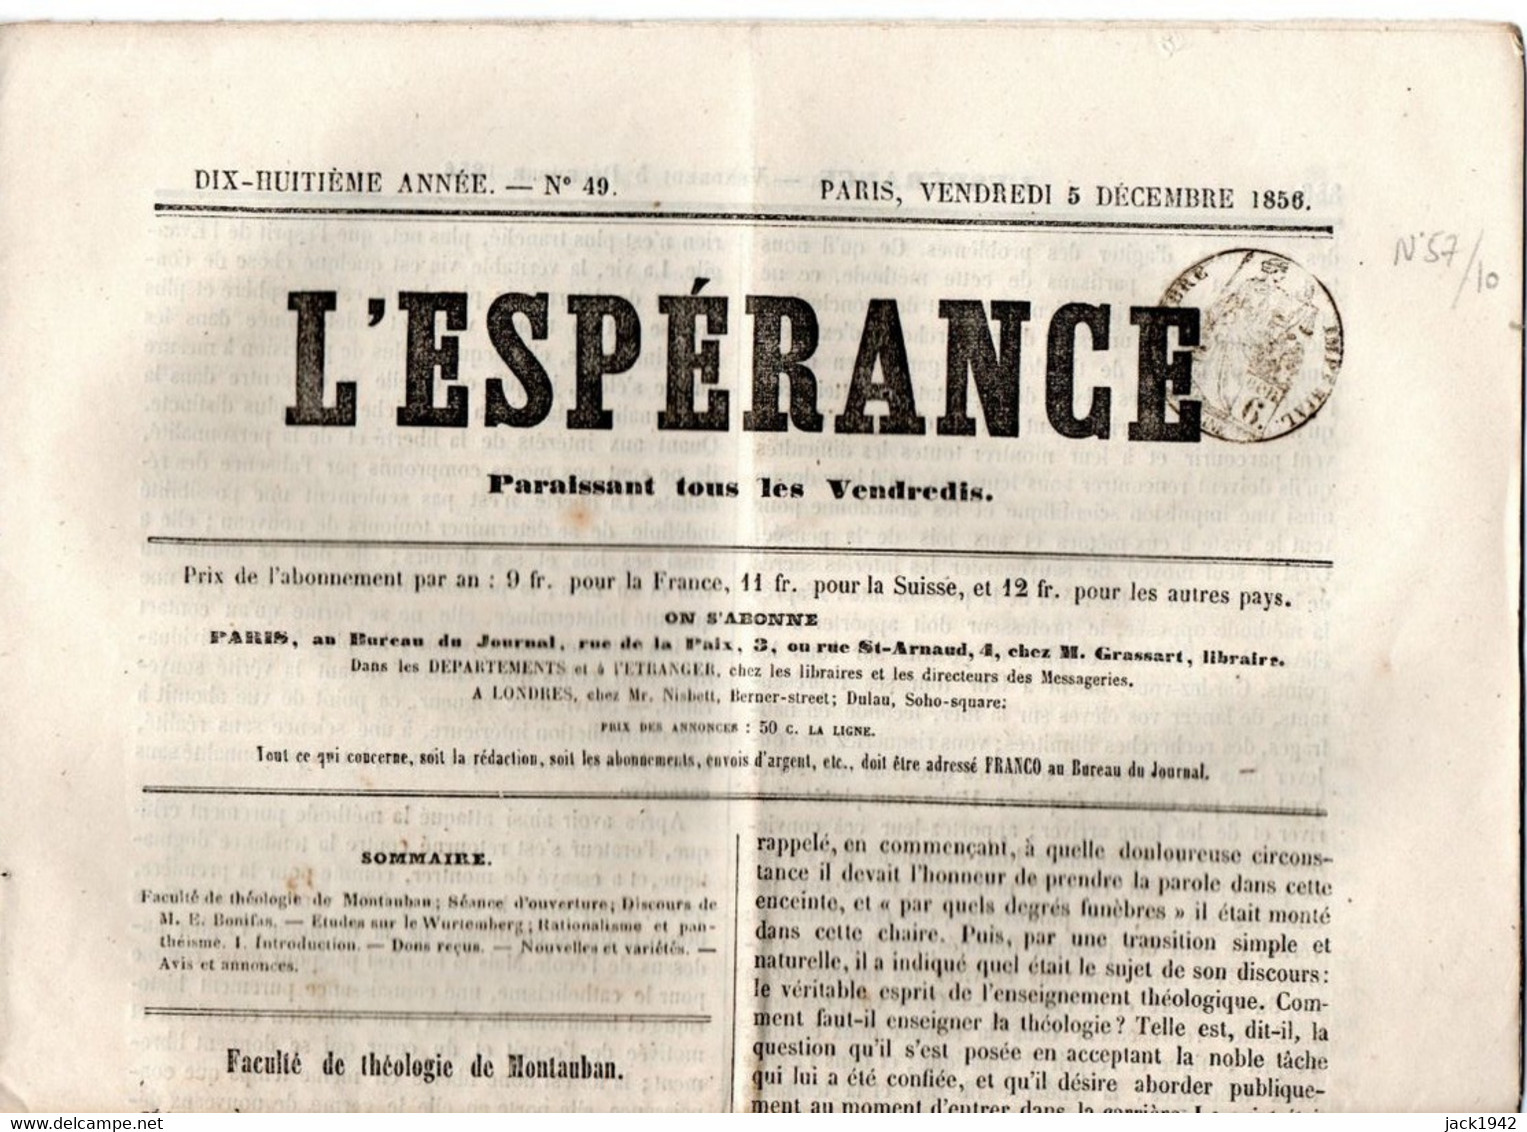 Journal L'Espérance Du 5 Décembre 1856, Avec Timbre Humide " Timbre / Impérial 6 Centimes" - Newspapers